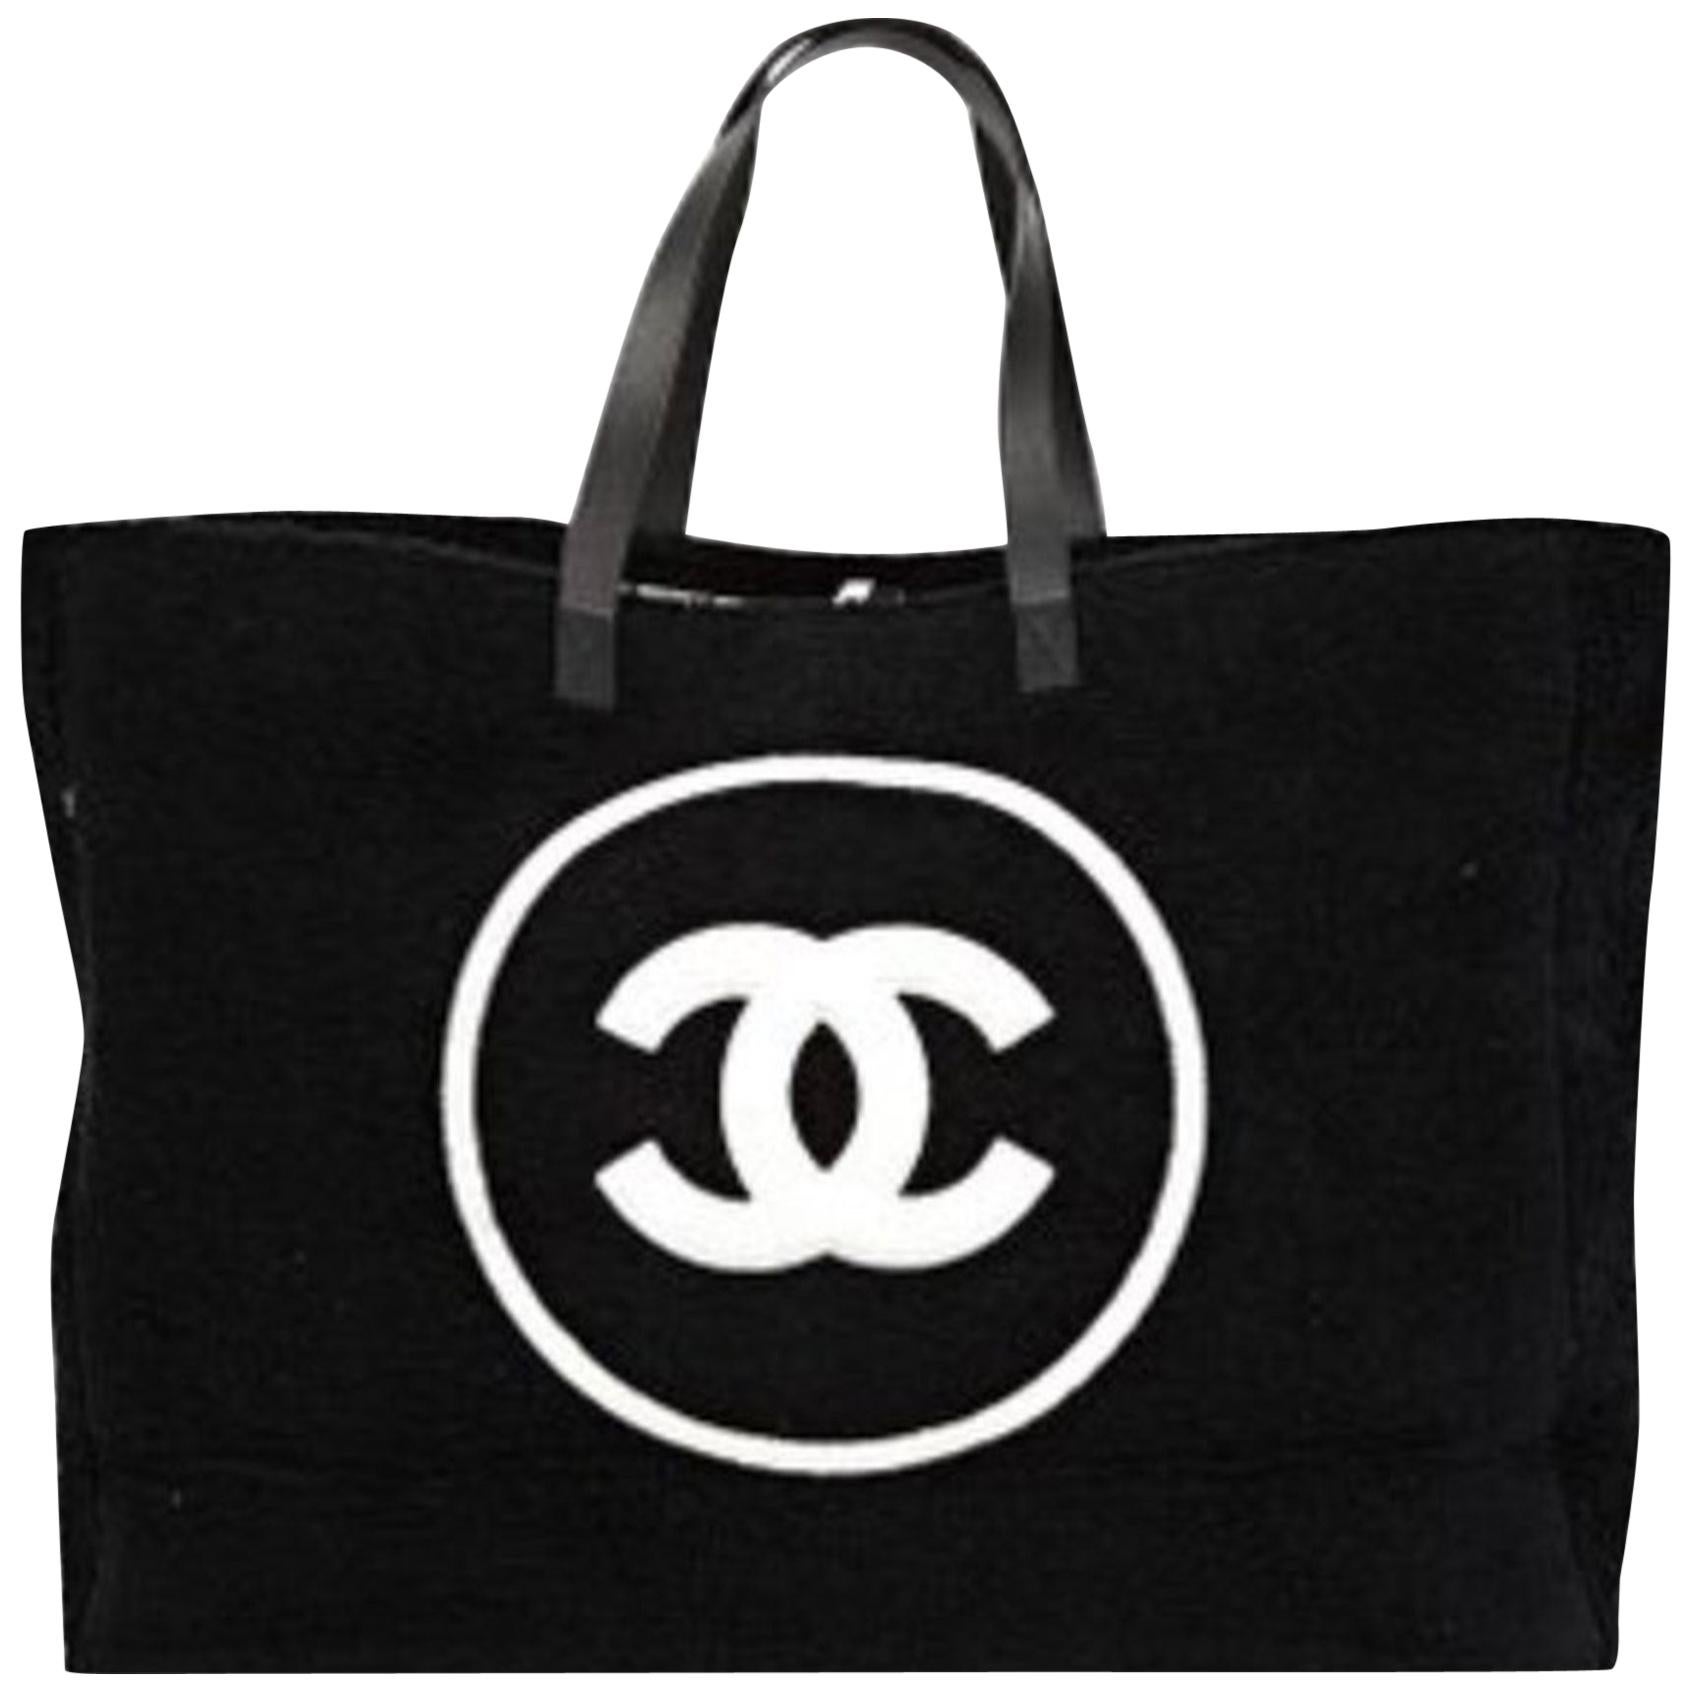 Chanel Shopping Top Handle Tote Baumwolle Strand Schwarz und Weiß Terry Stofftasche